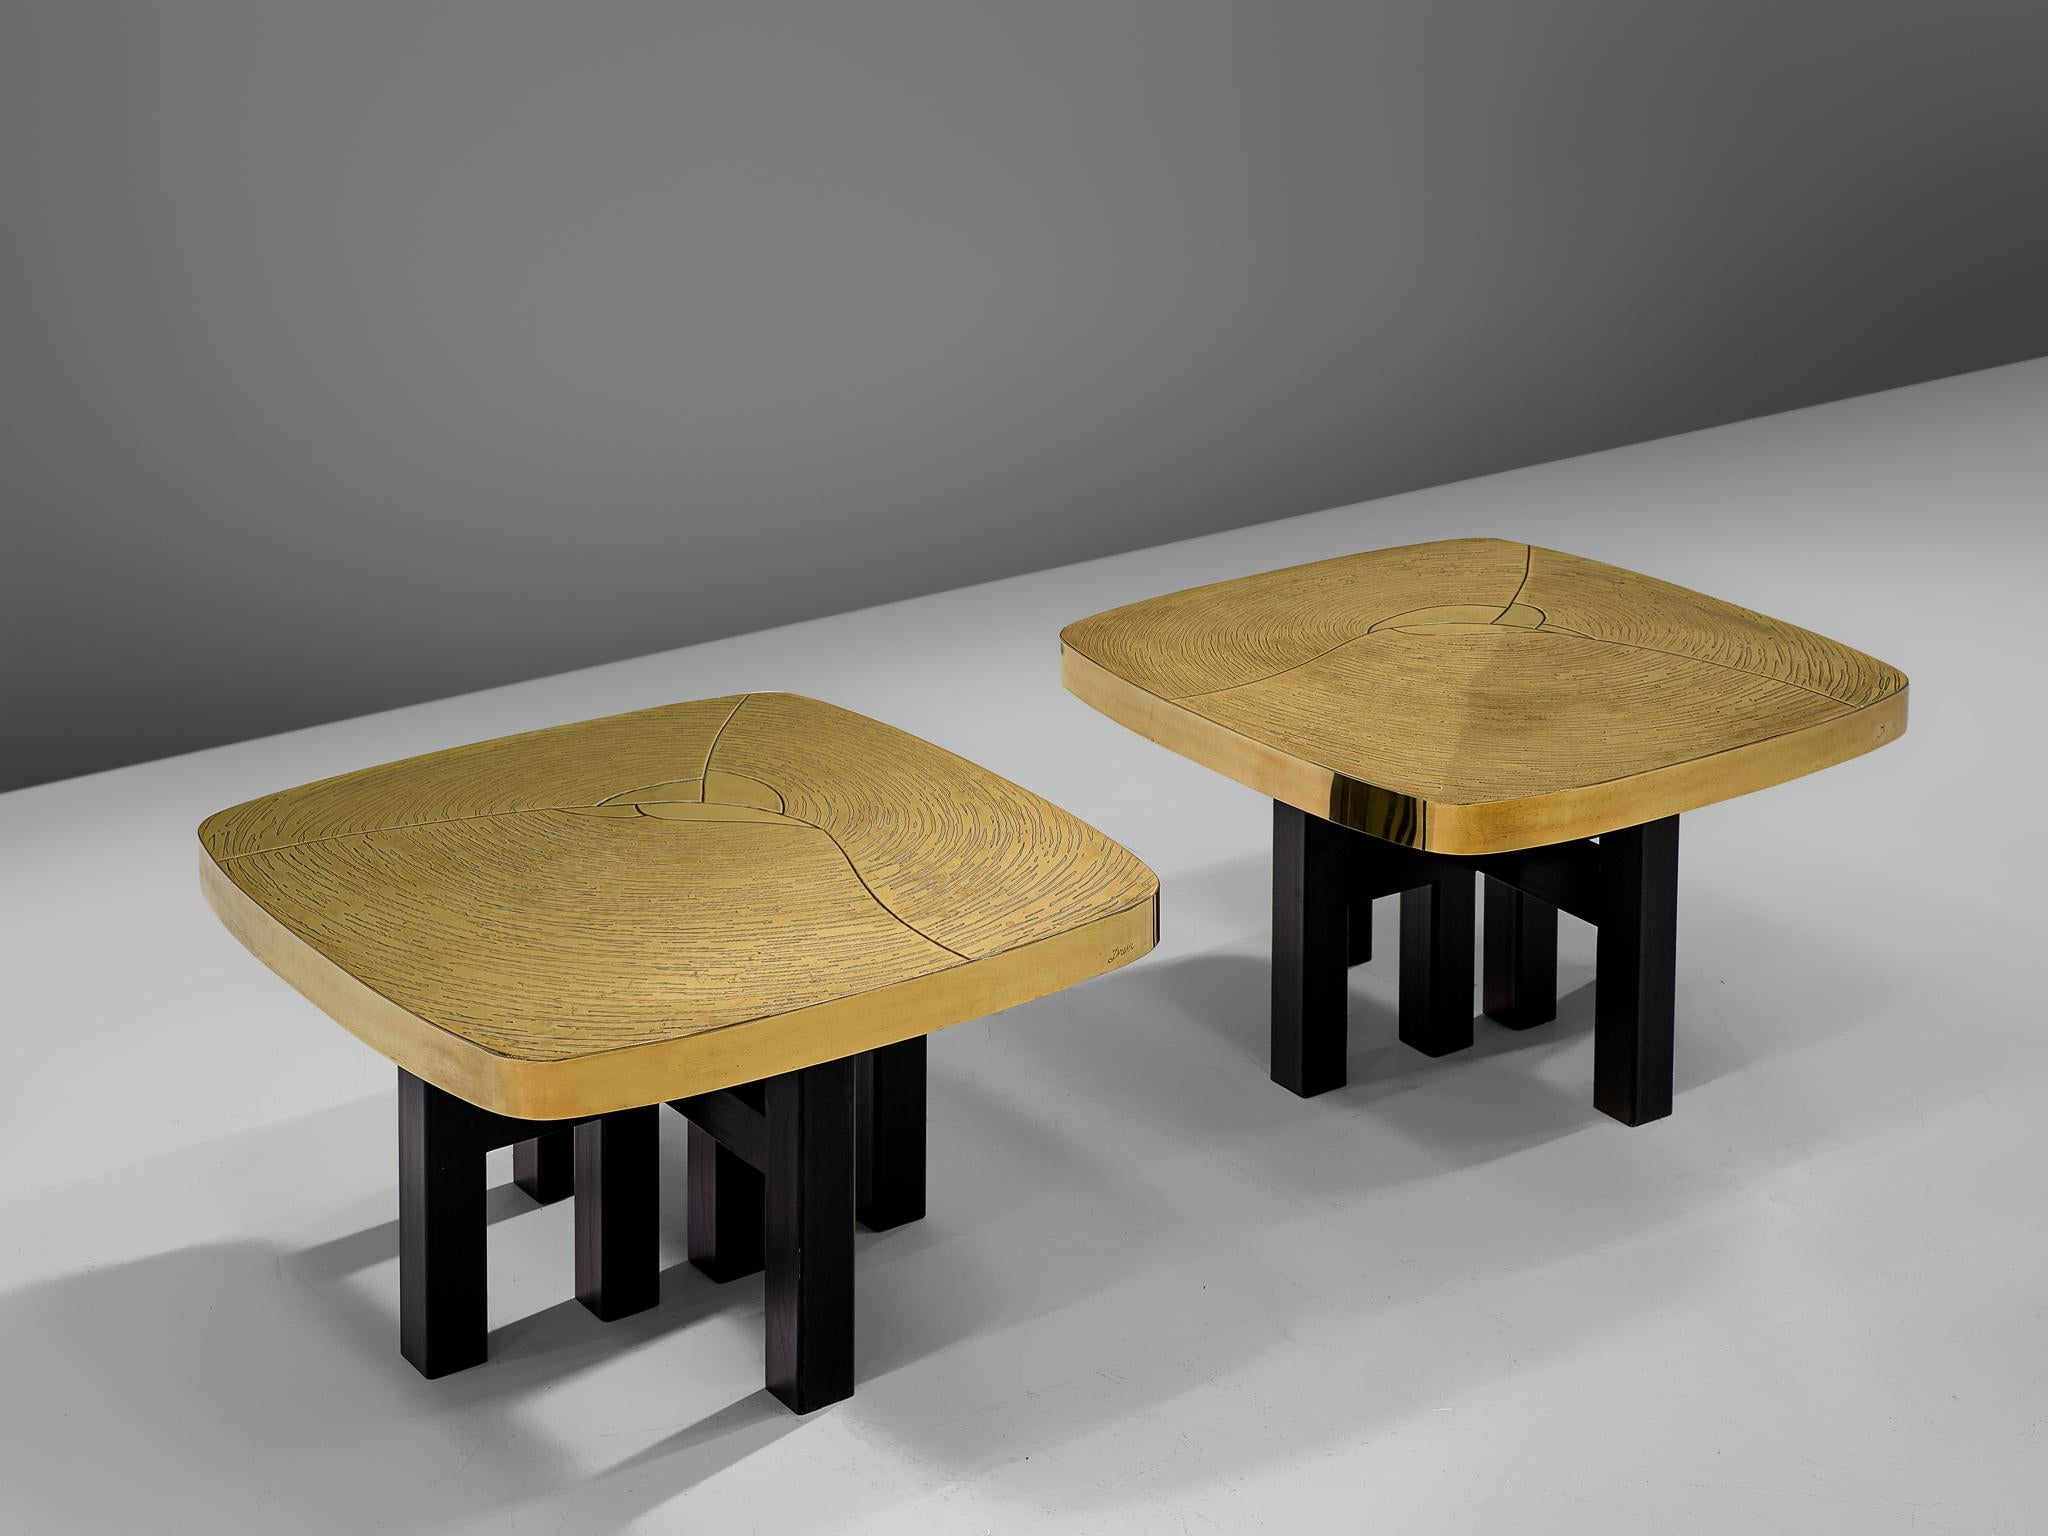 Jean Claude Dresse, tables d'appoint, laiton, acier laqué, Belgique, vers 1976

Une luxueuse paire de tables d'appoint carrées, fabriquées avec le souci du détail qui caractérise le travail de l'artiste belge Jean Claude Dresse. Cette paire a une